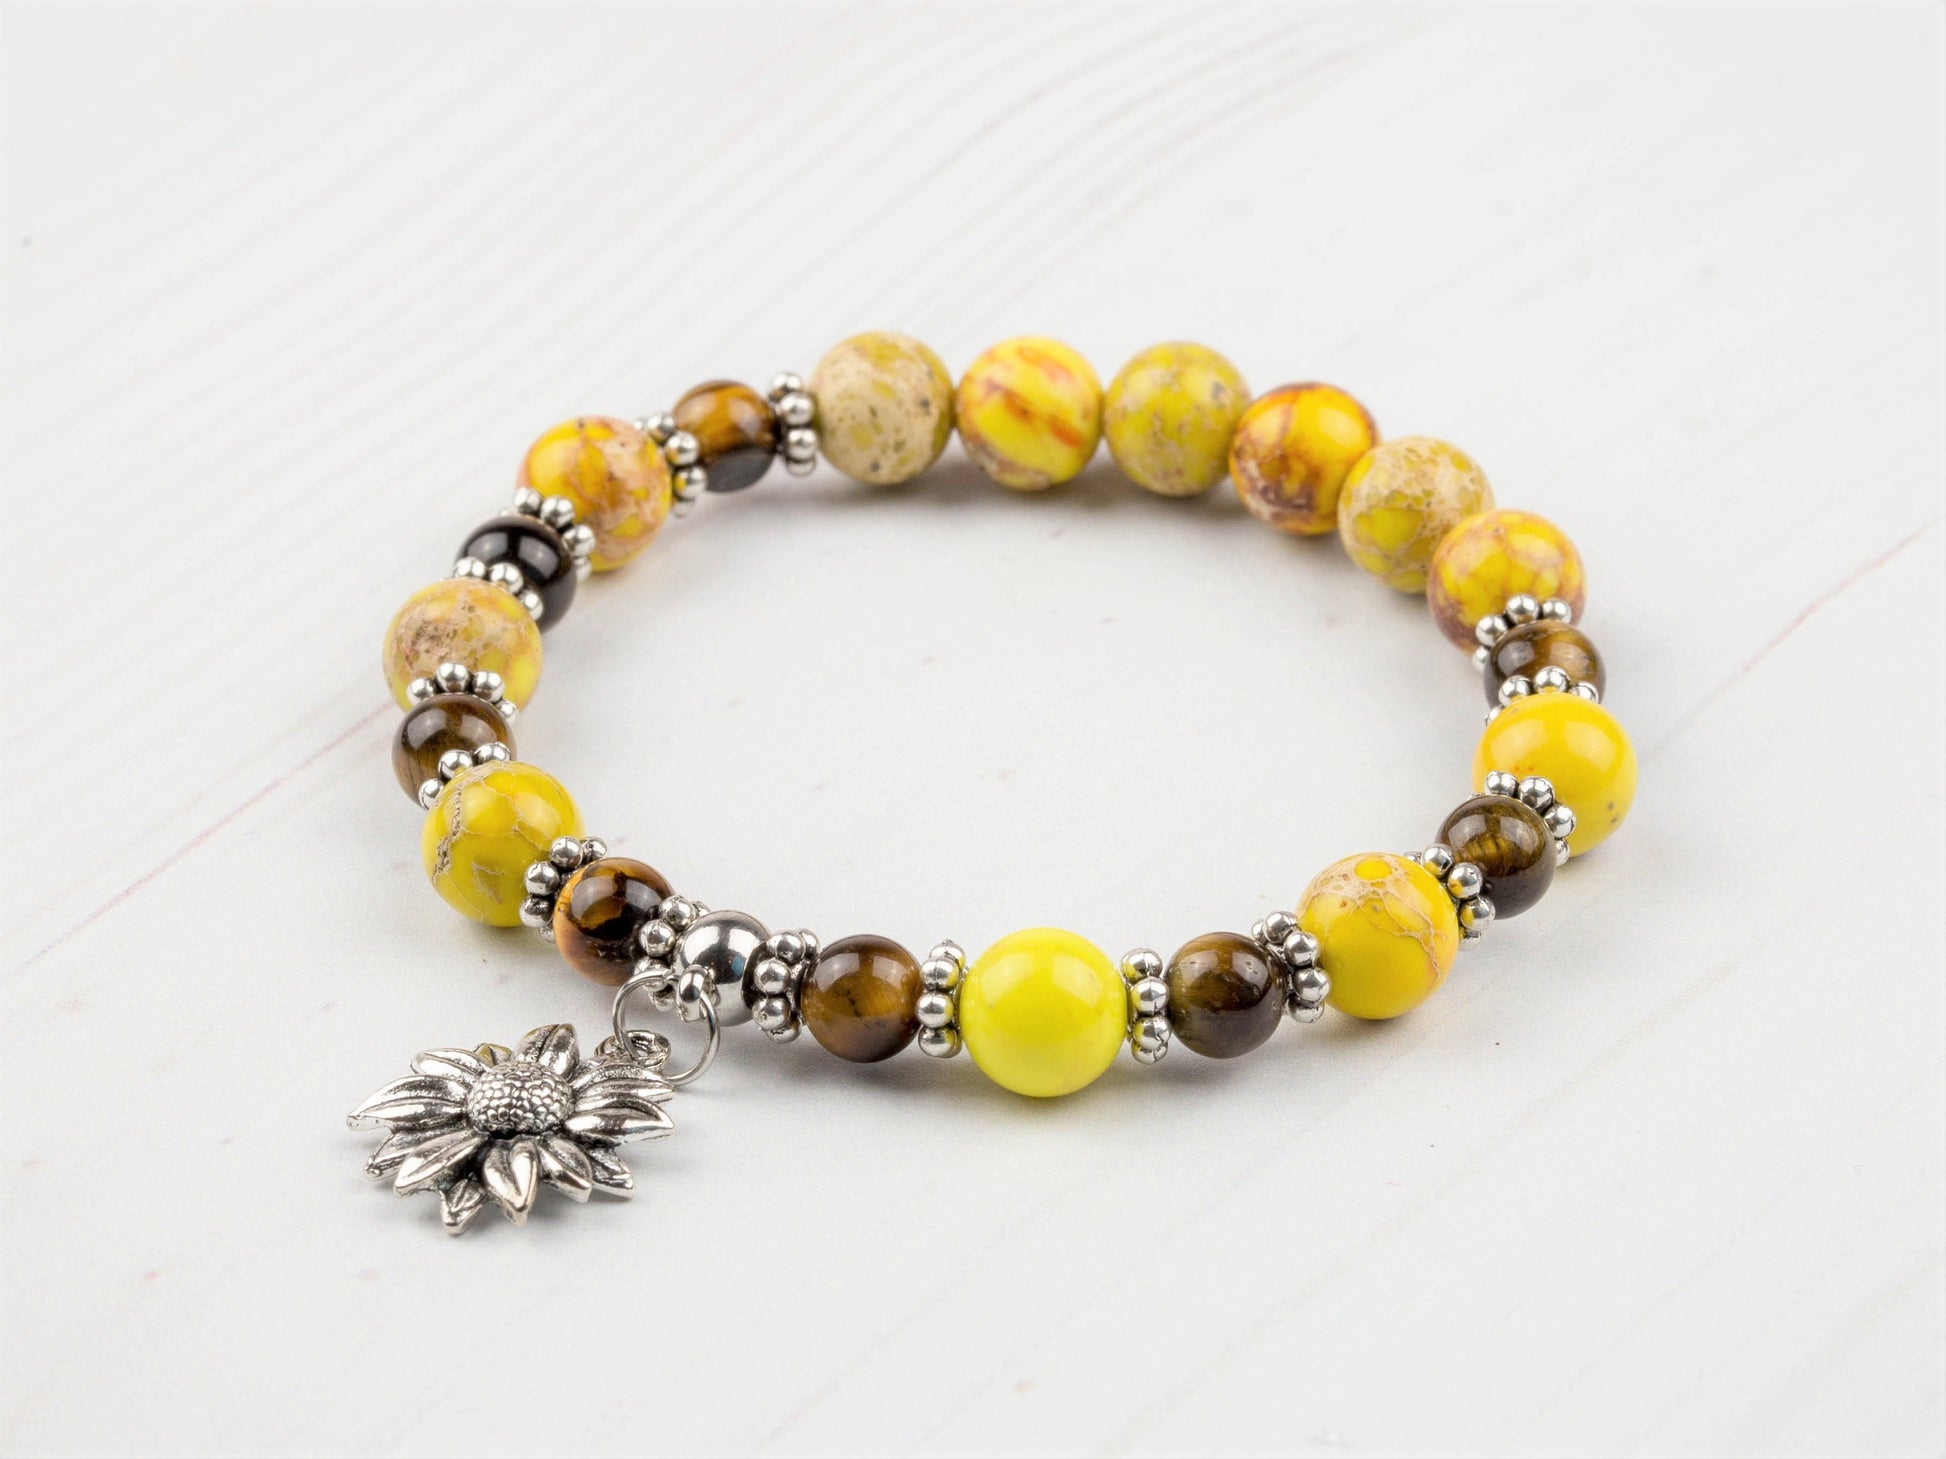 Sunflower Bracelet | Sunflower Charm Jewelry | Laughter Bracelet | Happiness Bracelet | Energy Bracelet | Bracelet for Joy | Sunflower Jewel